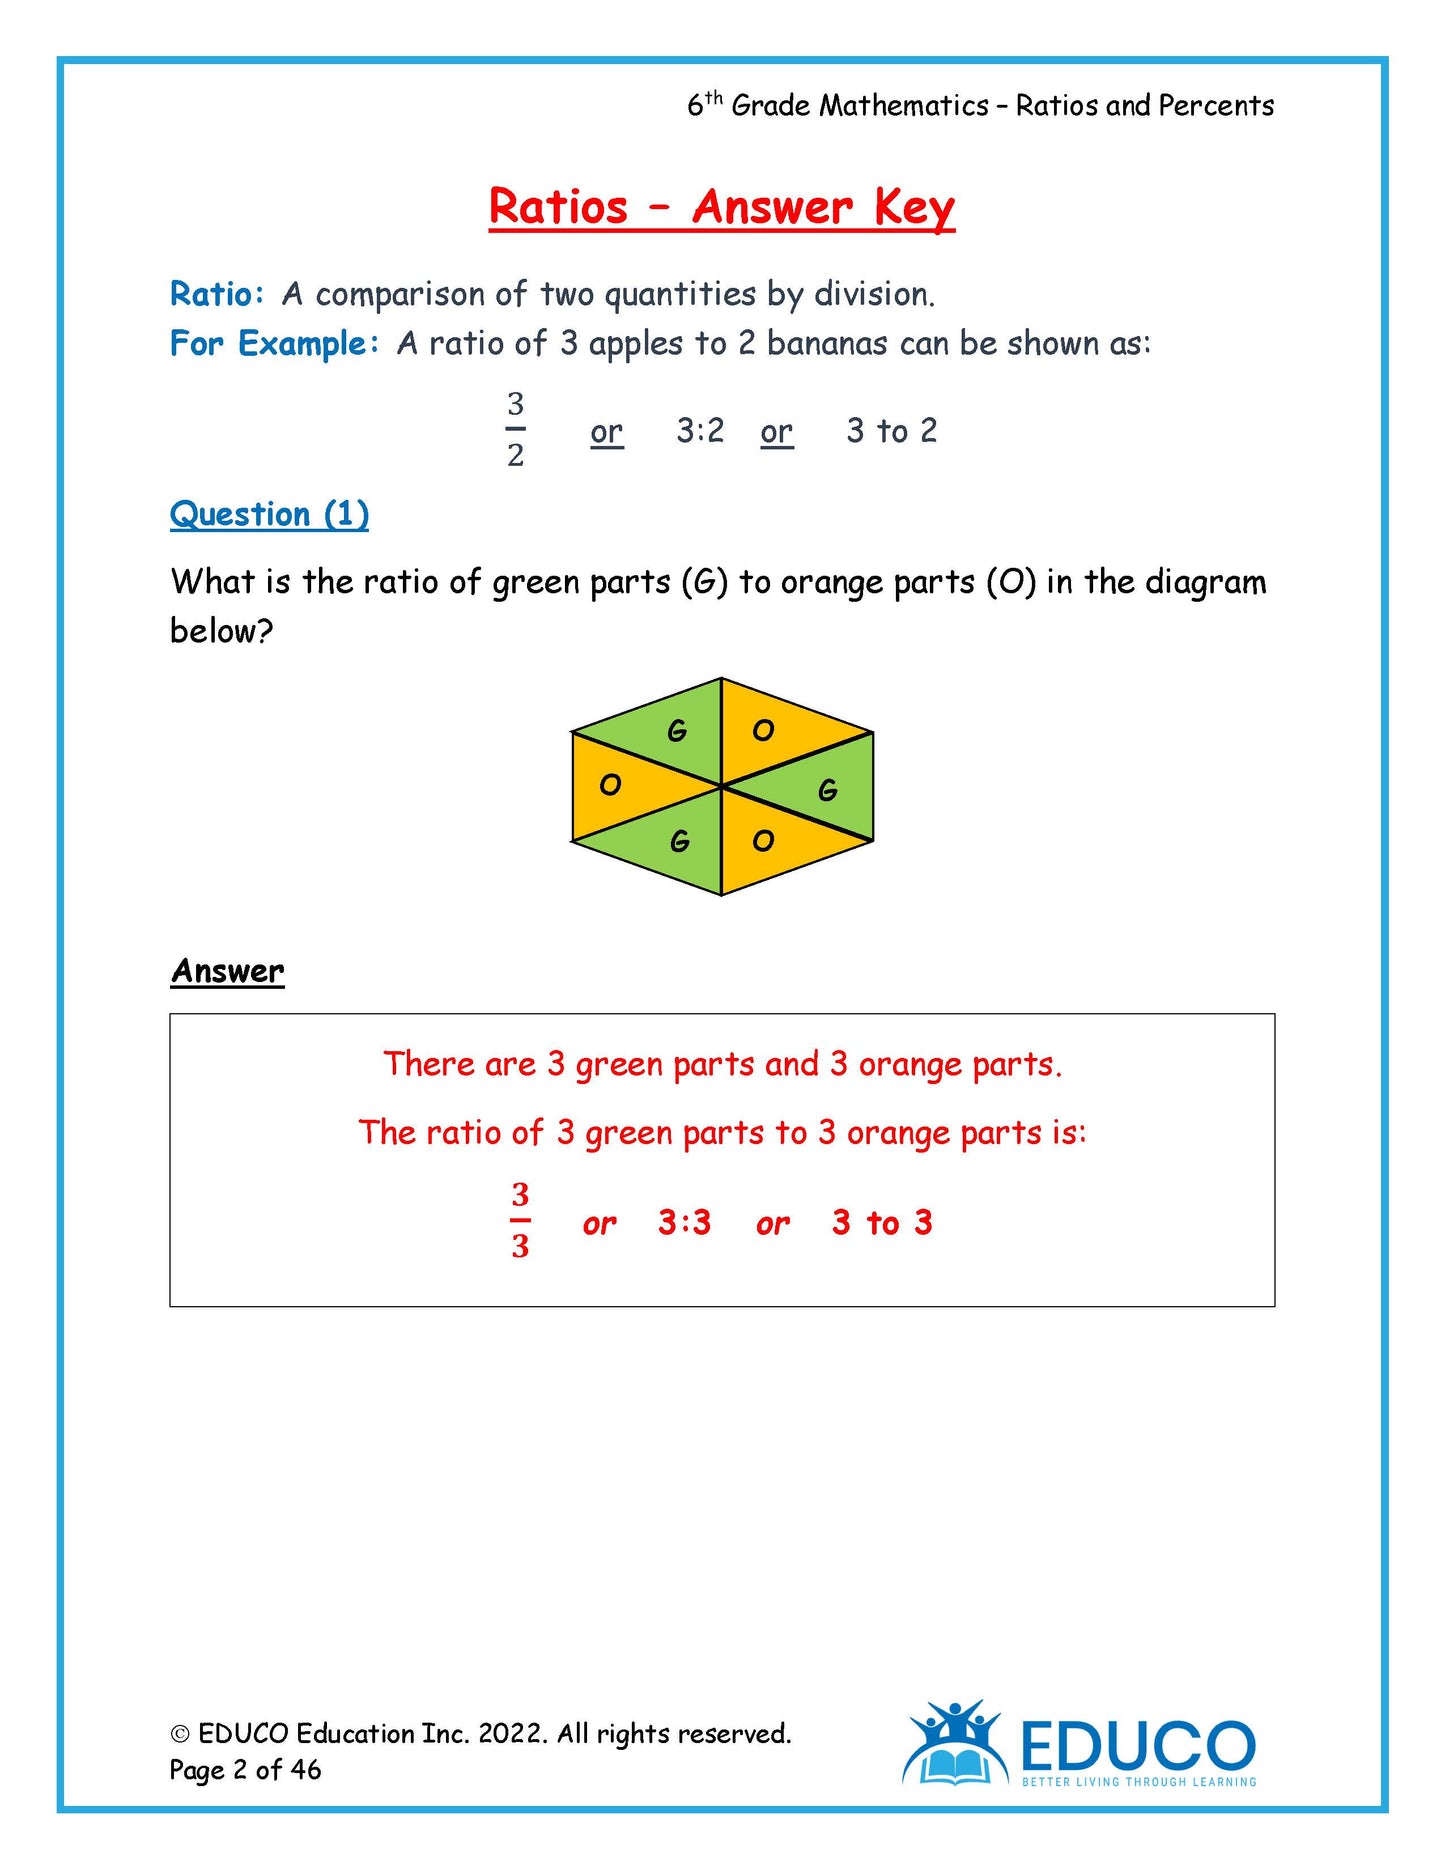 Unit 6: Ratio and Percent - Grade 6 Math (Digital Download)